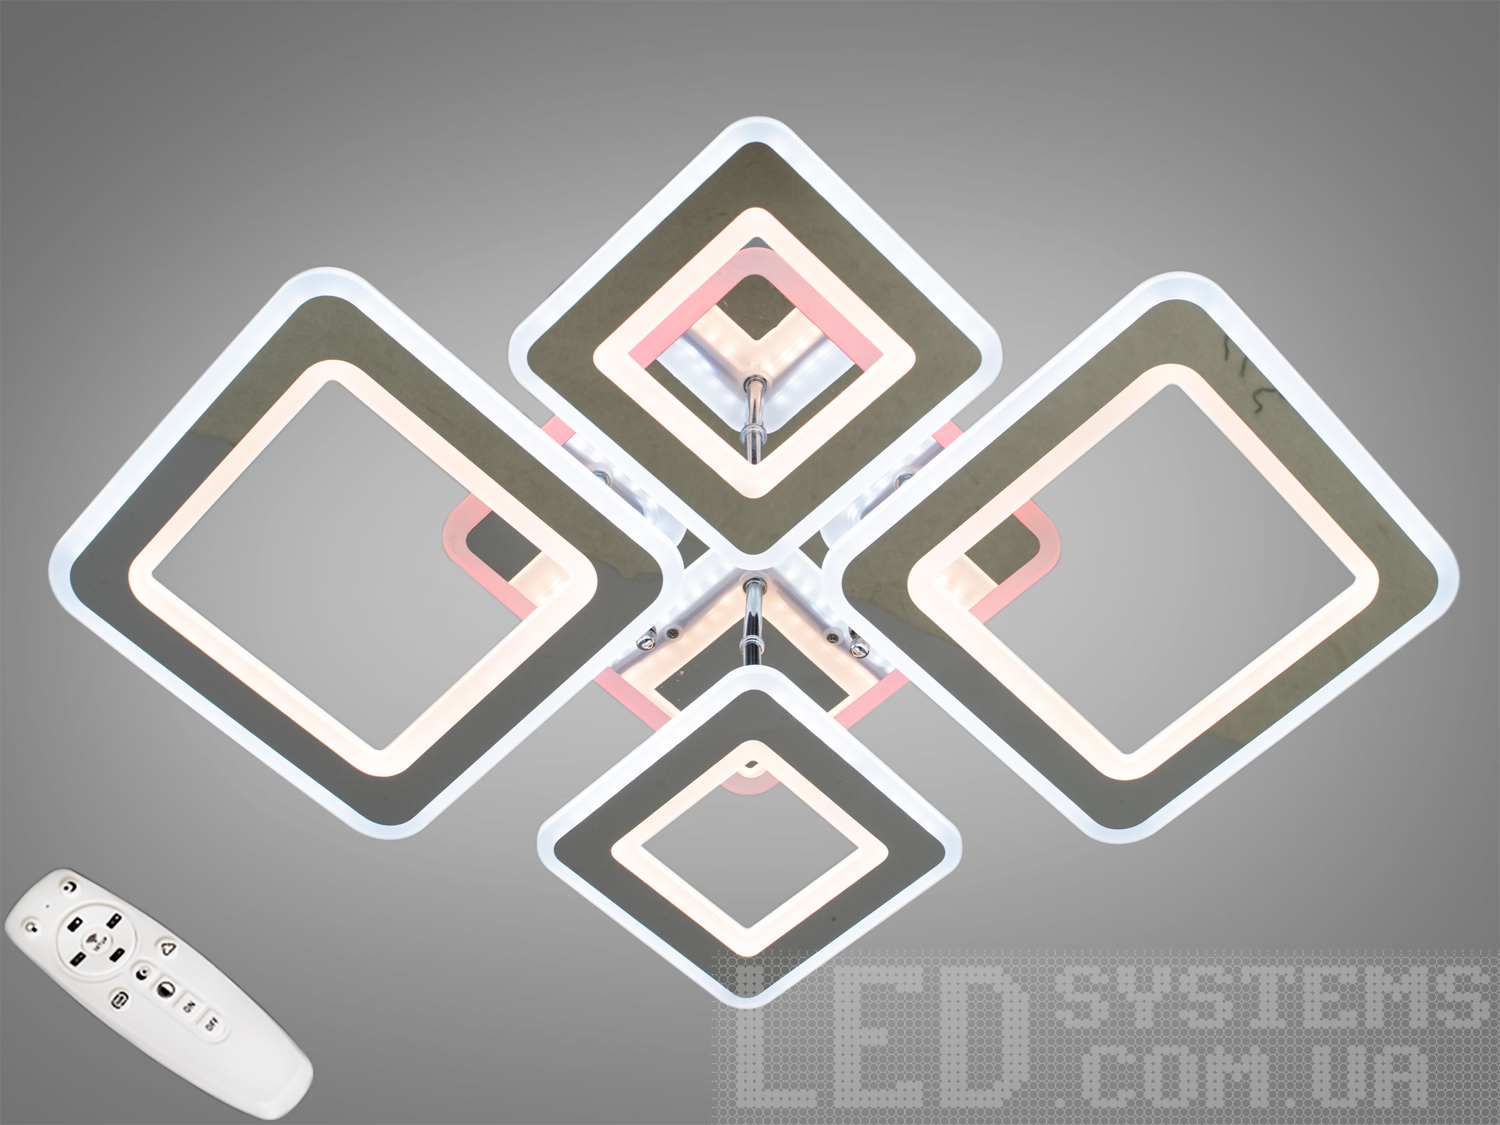 Перед Вами зовсім нове і незвичайне виконання плафонів, що обрамляють LED лампи. Така люстра запросто підійде під будь-який інтер'єр - класичний, сучасний і навіть у стилі «хай-тек».Люстра оснащена блоком живлення світлодіодних ламп, пультовим керуванням, порежимним включенням.